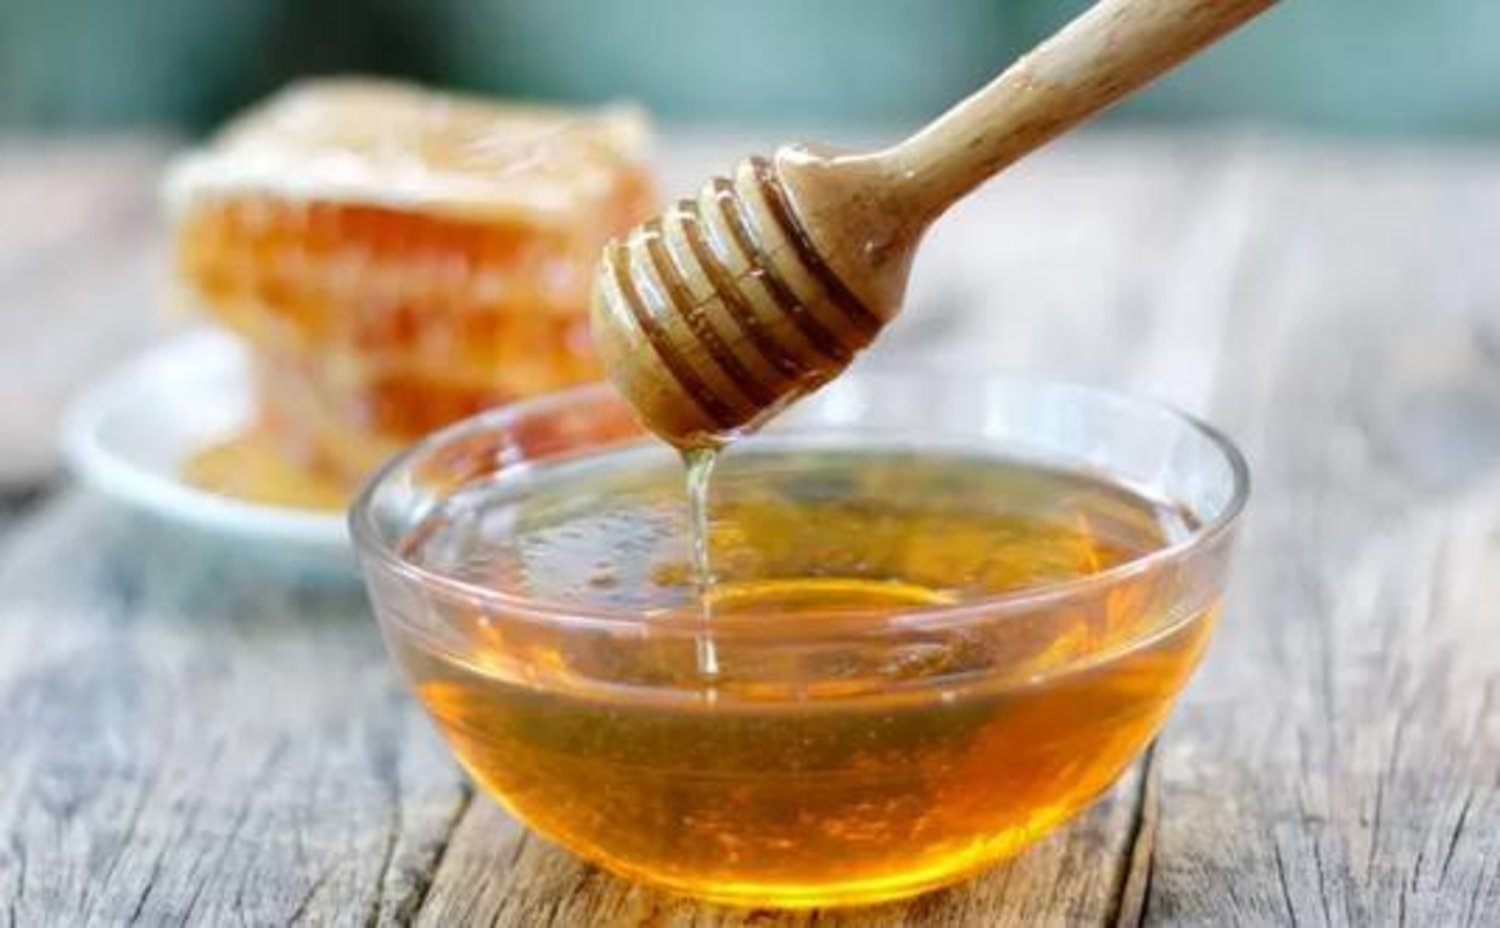 تعرّف على فوائد العسل الصحية المذهلة في الشتاء